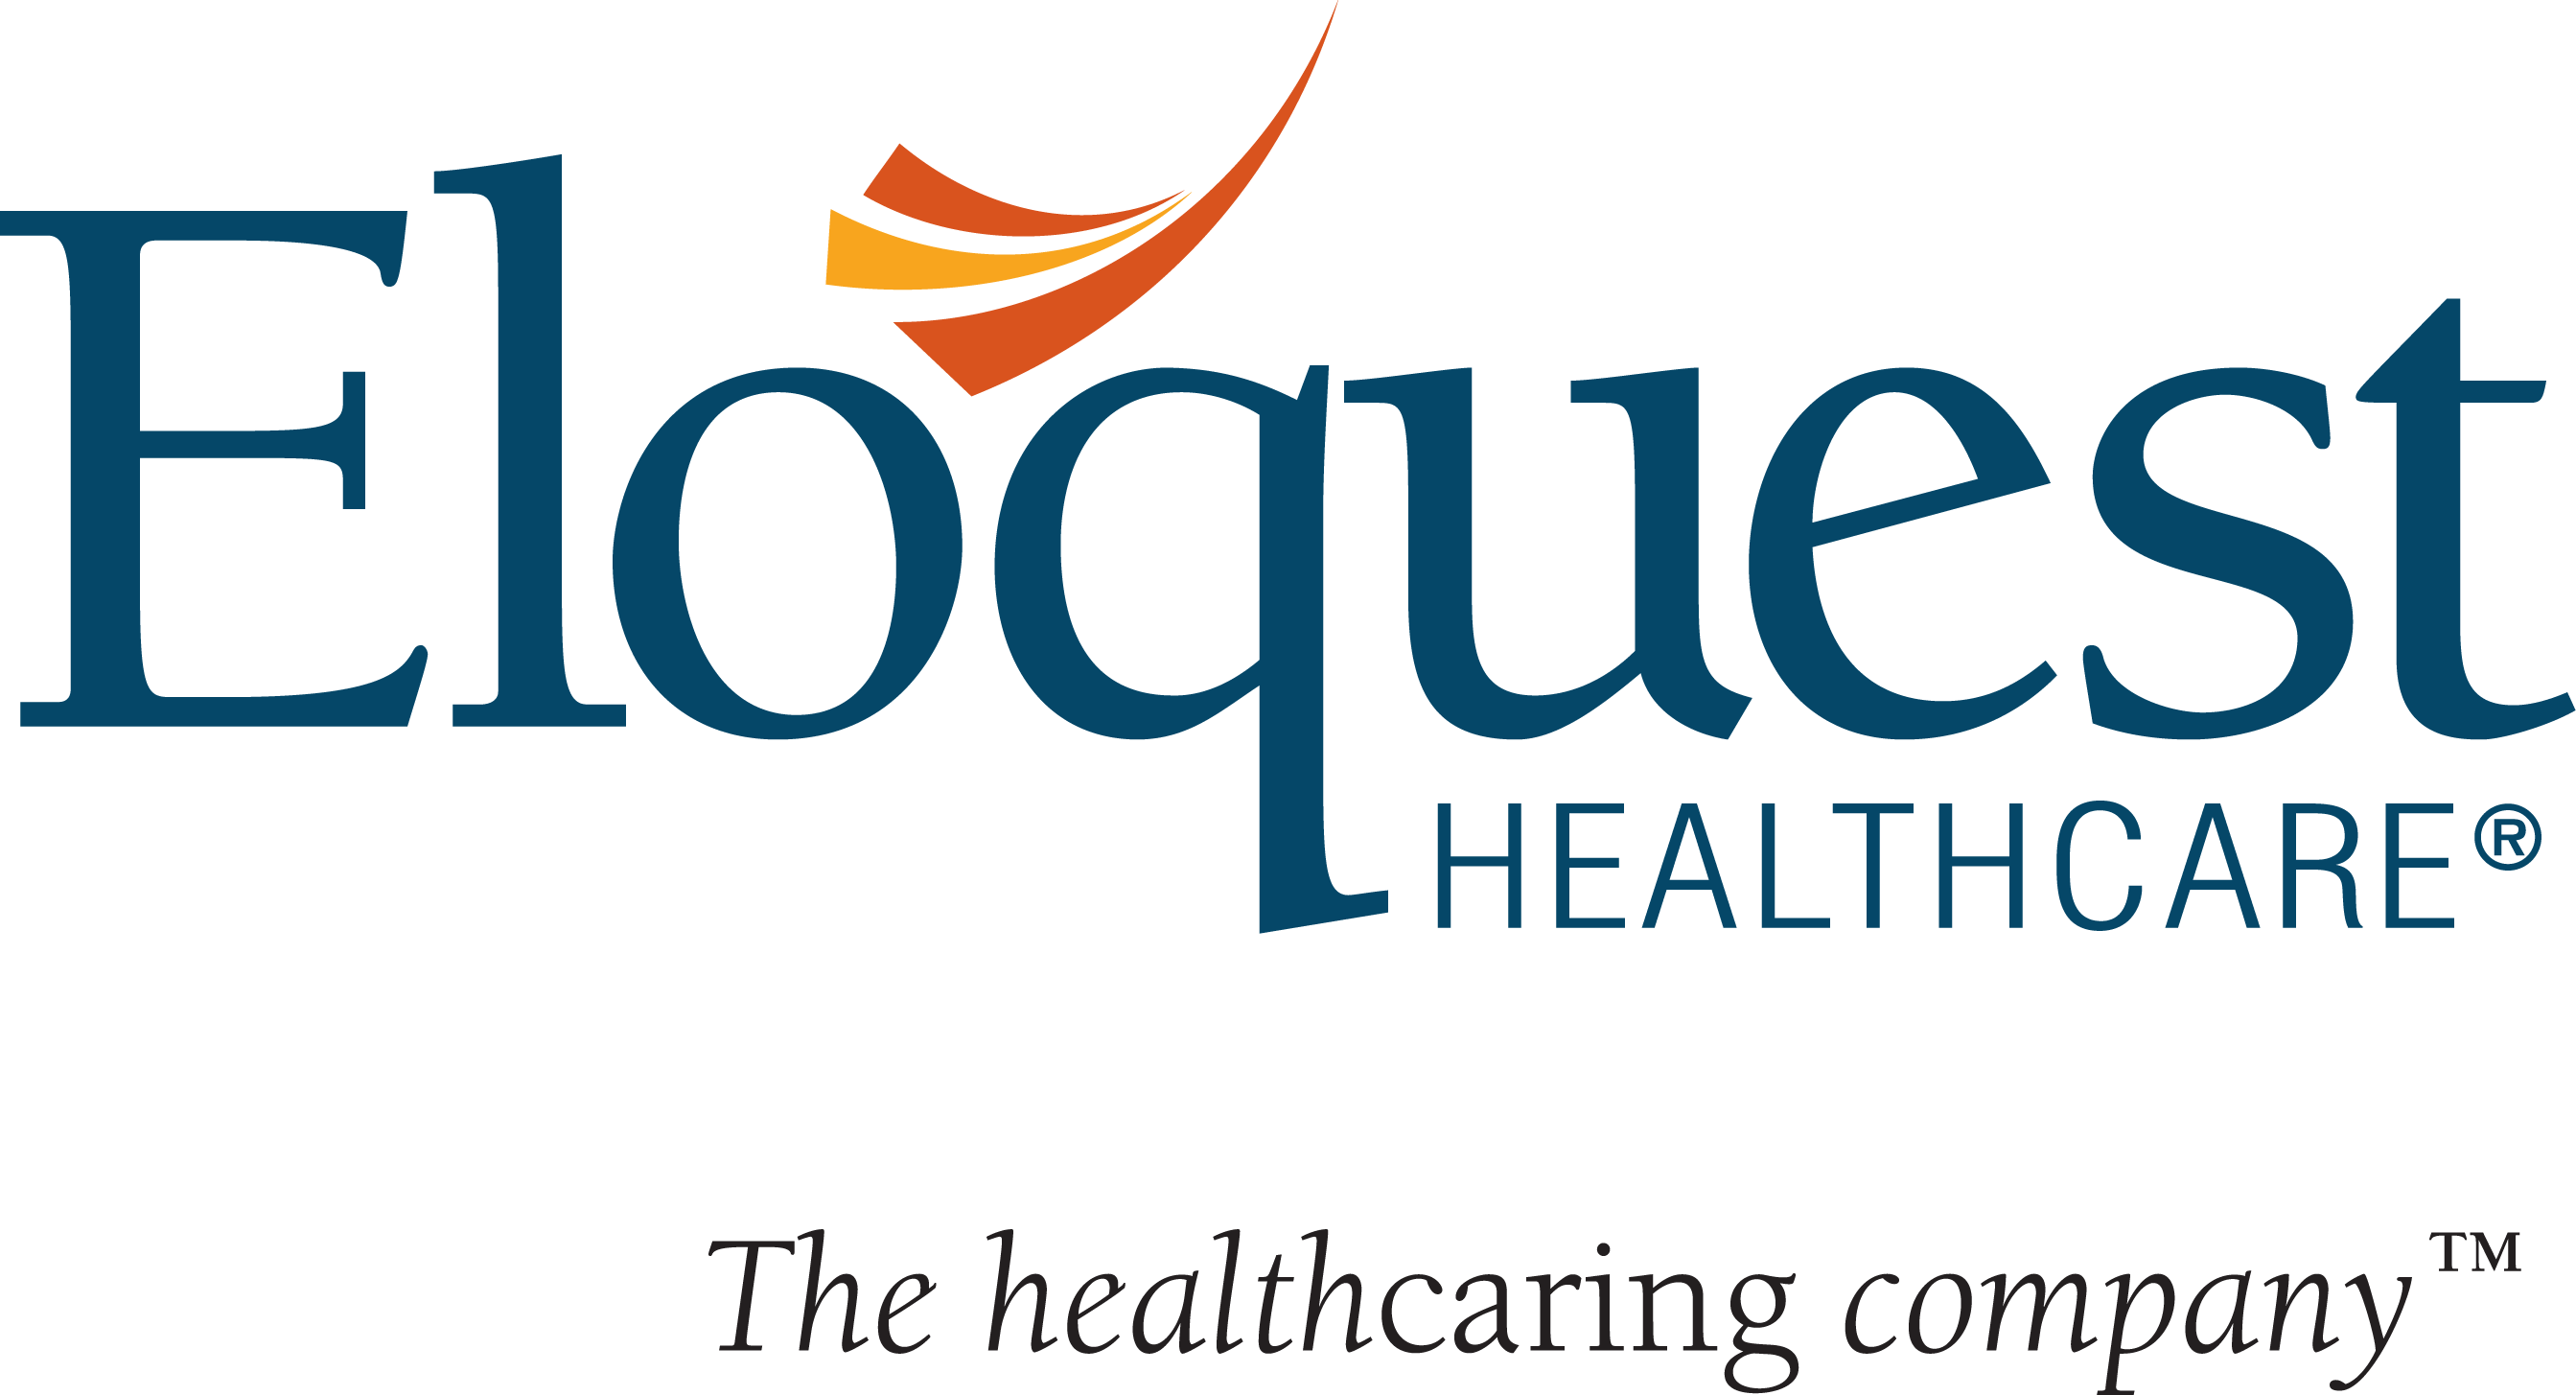 Eloquest Healthcare Inc. Company Logo